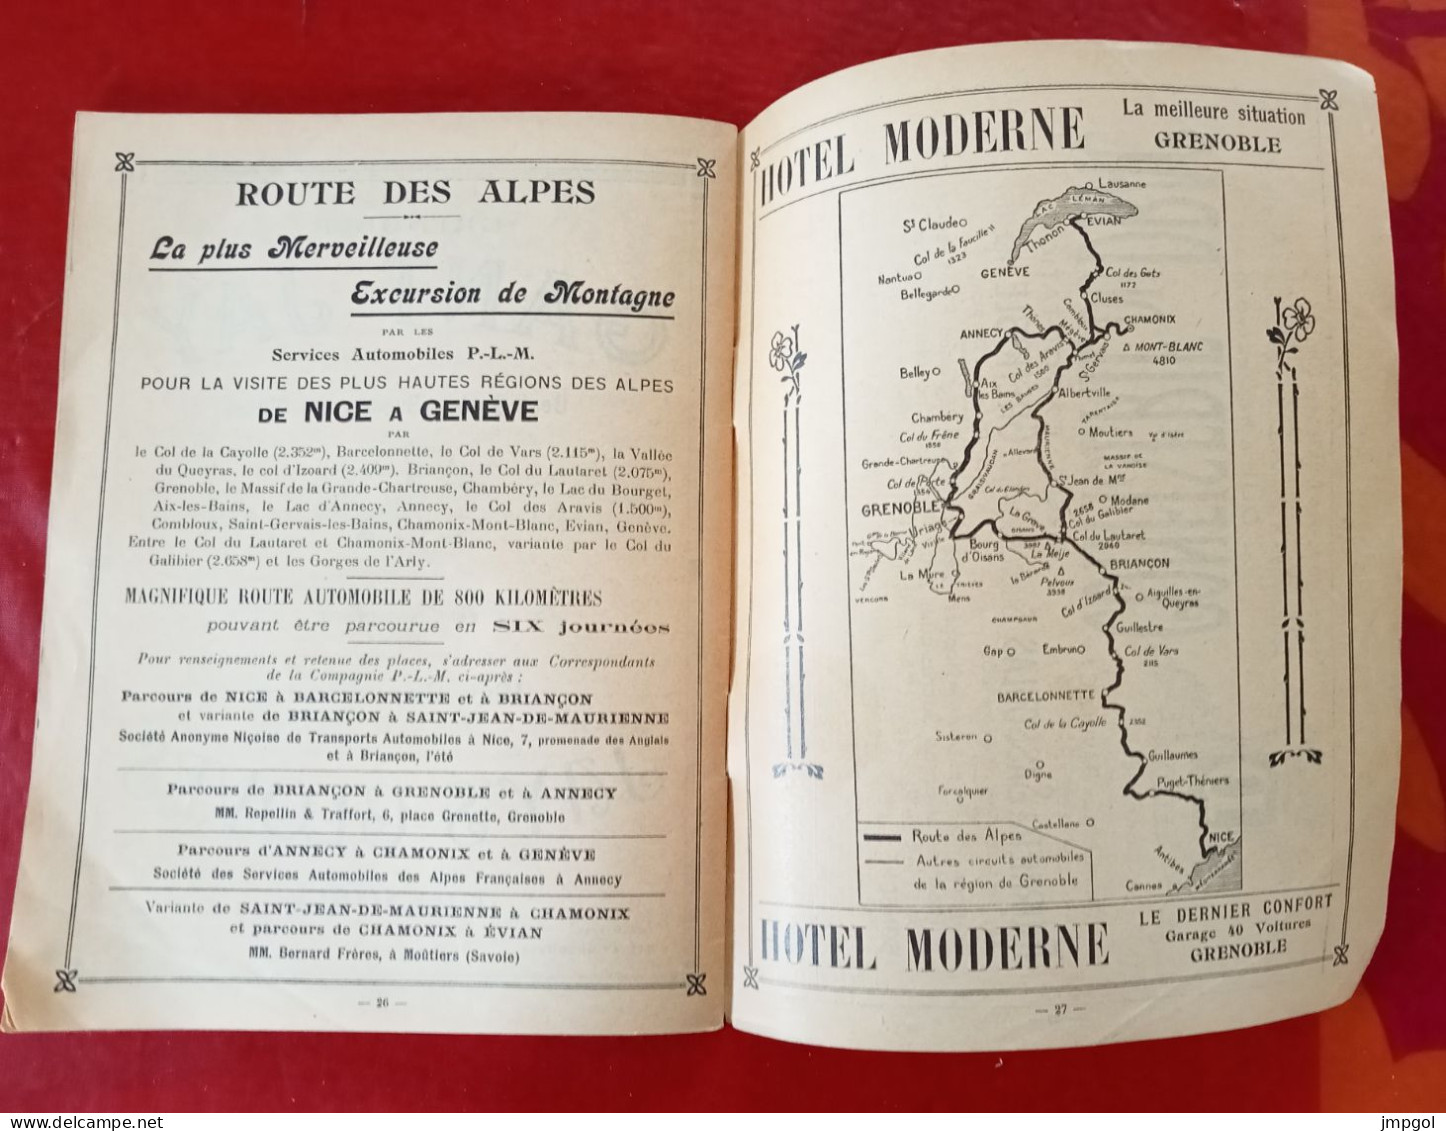 Livret Cartes Des Alpes DauphinoisesPublicités Stations Thermales Uriage Allevard Hôtels Plan De Grenoble Vers 1900 - Tourism Brochures